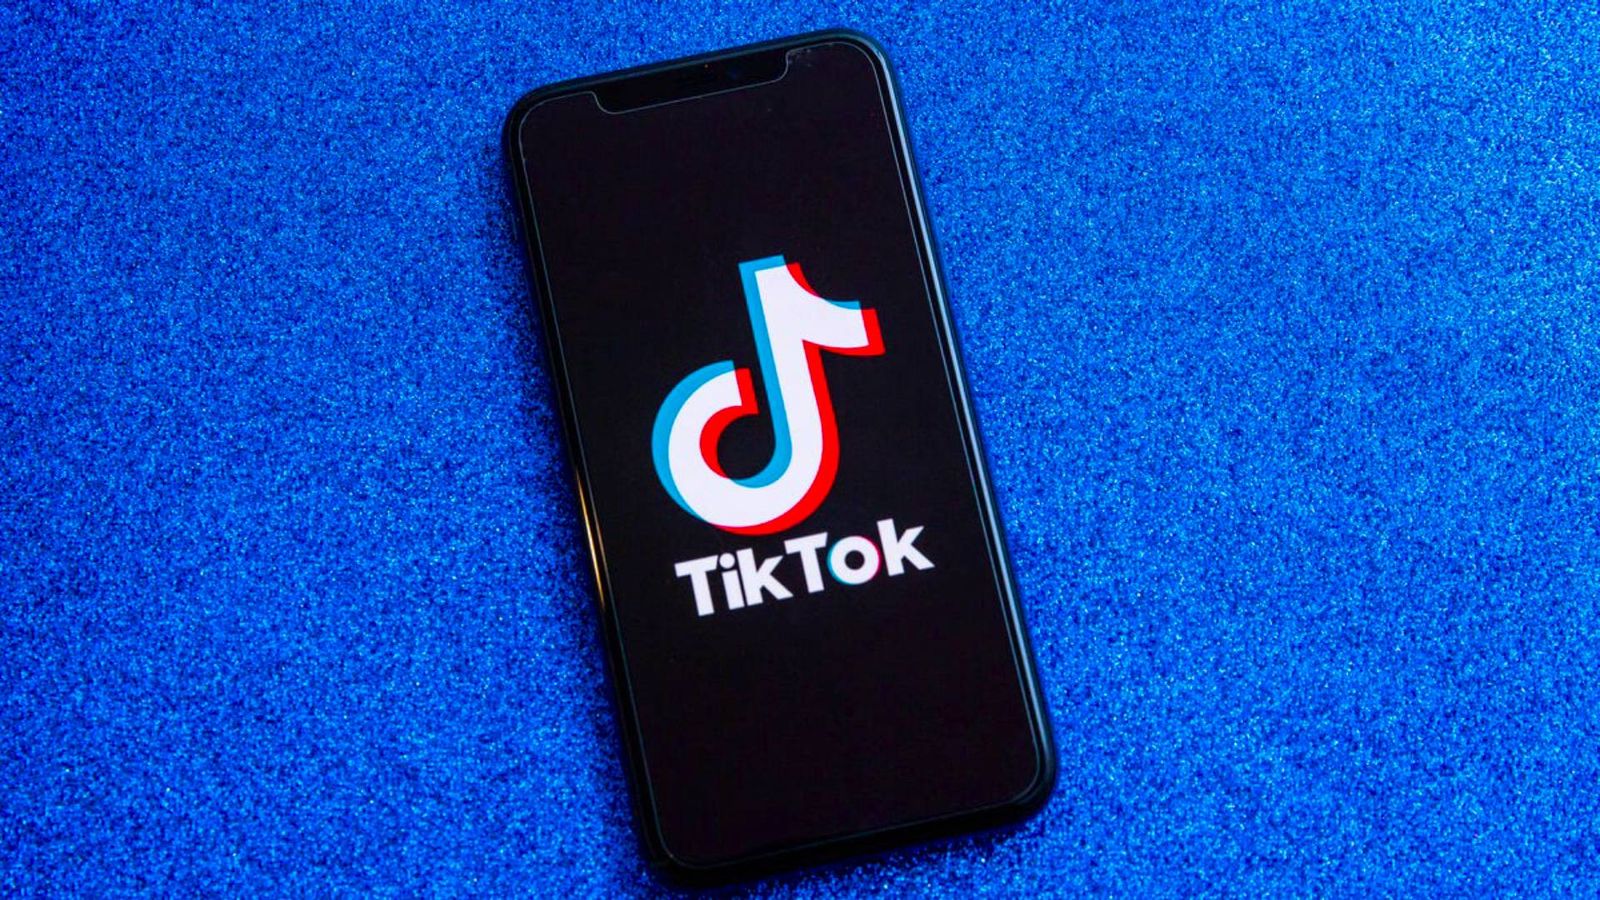 September 1st strike TikTok - An image of the TikTok logo on a smartphone